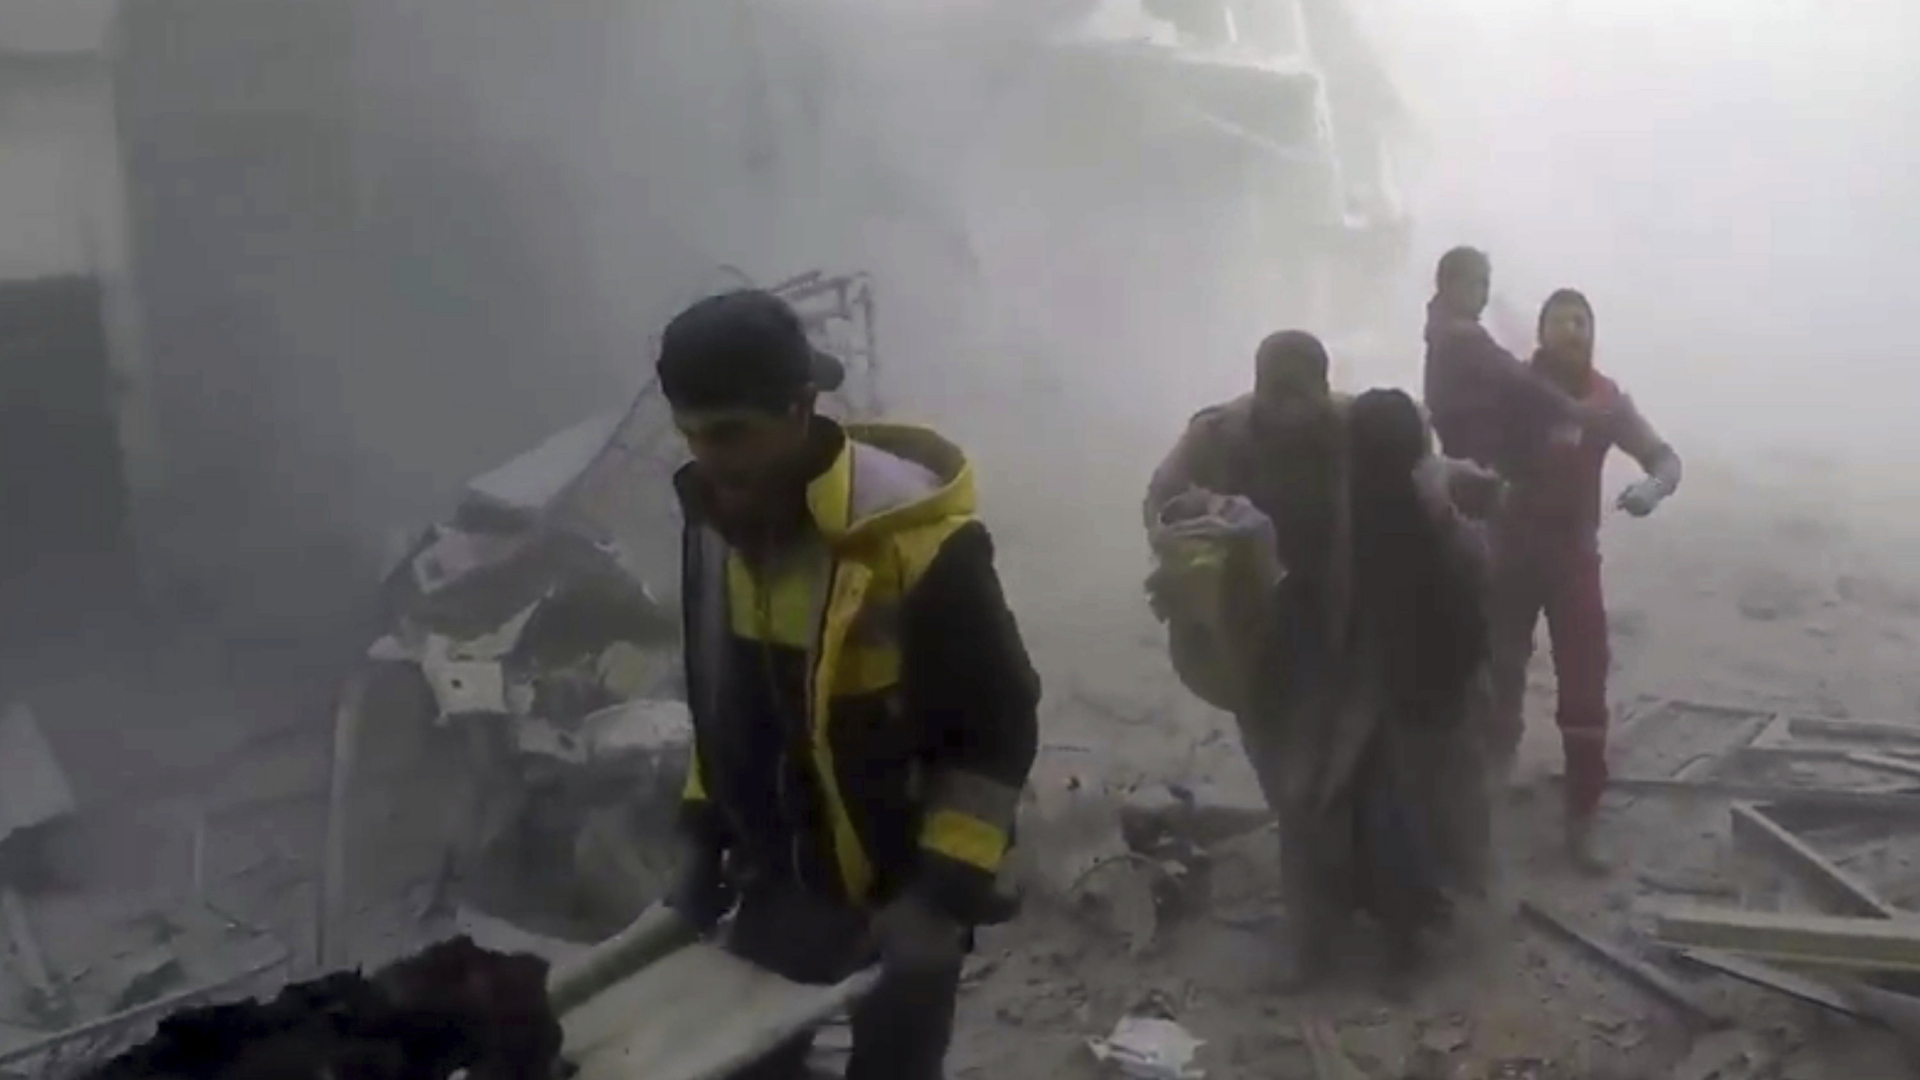 Helfer des Zivilschutzes leiten verletzte Zivilisten aus den zerstörten Gebieten im syrischen Ost-Ghouta. | dpa